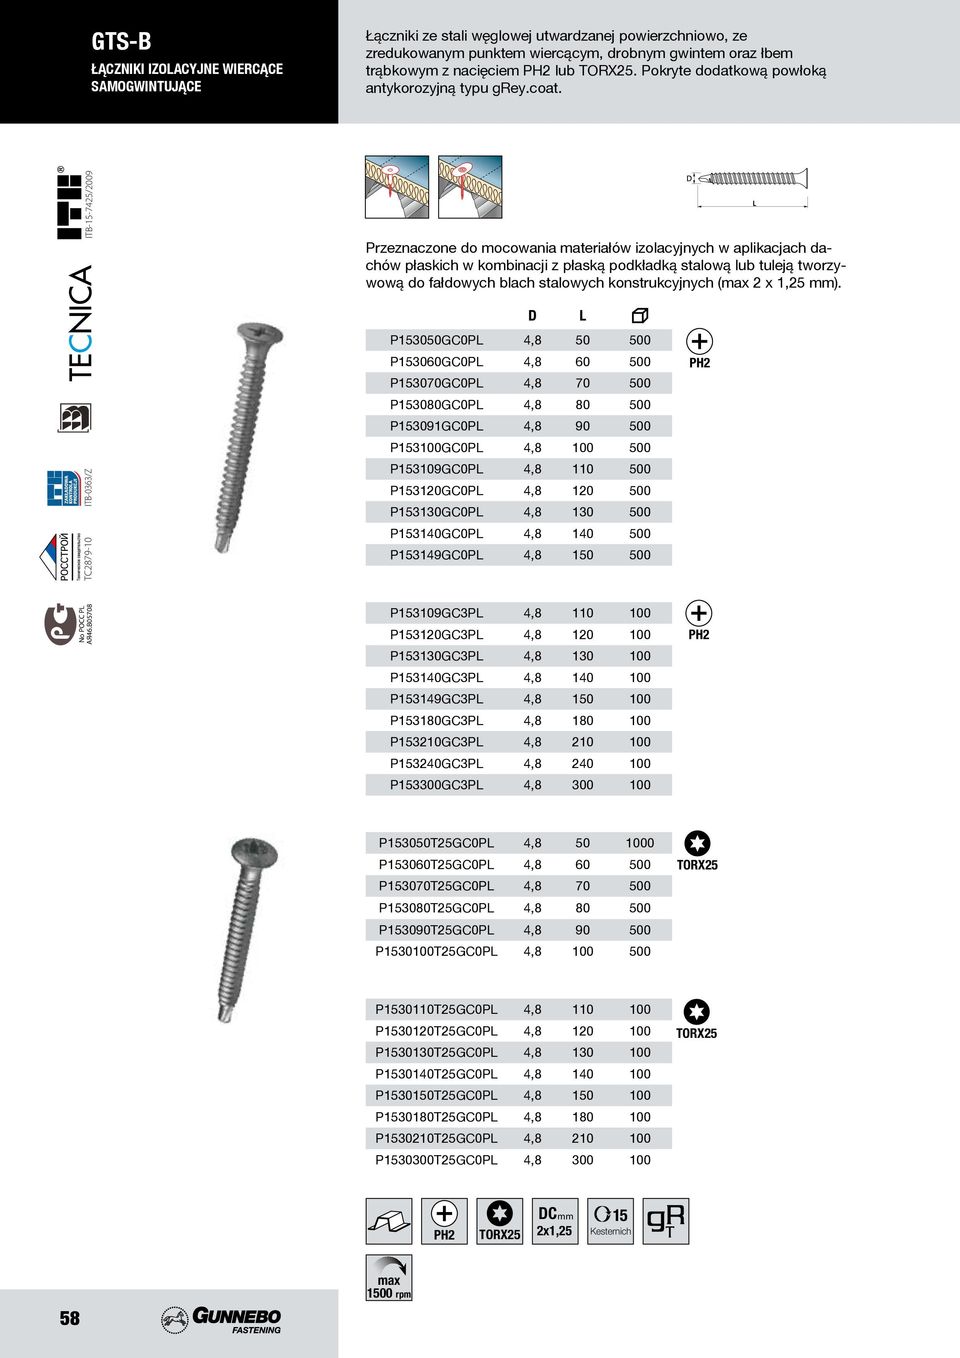 ITB-15-7425/2009 Przeznaczone do mocowania materiałów izolacyjnyc w aplikacjac daców płaskic w kombinacji z płaską podkładką stalową lub tuleją tworzywową do fałdowyc blac stalowyc konstrukcyjnyc